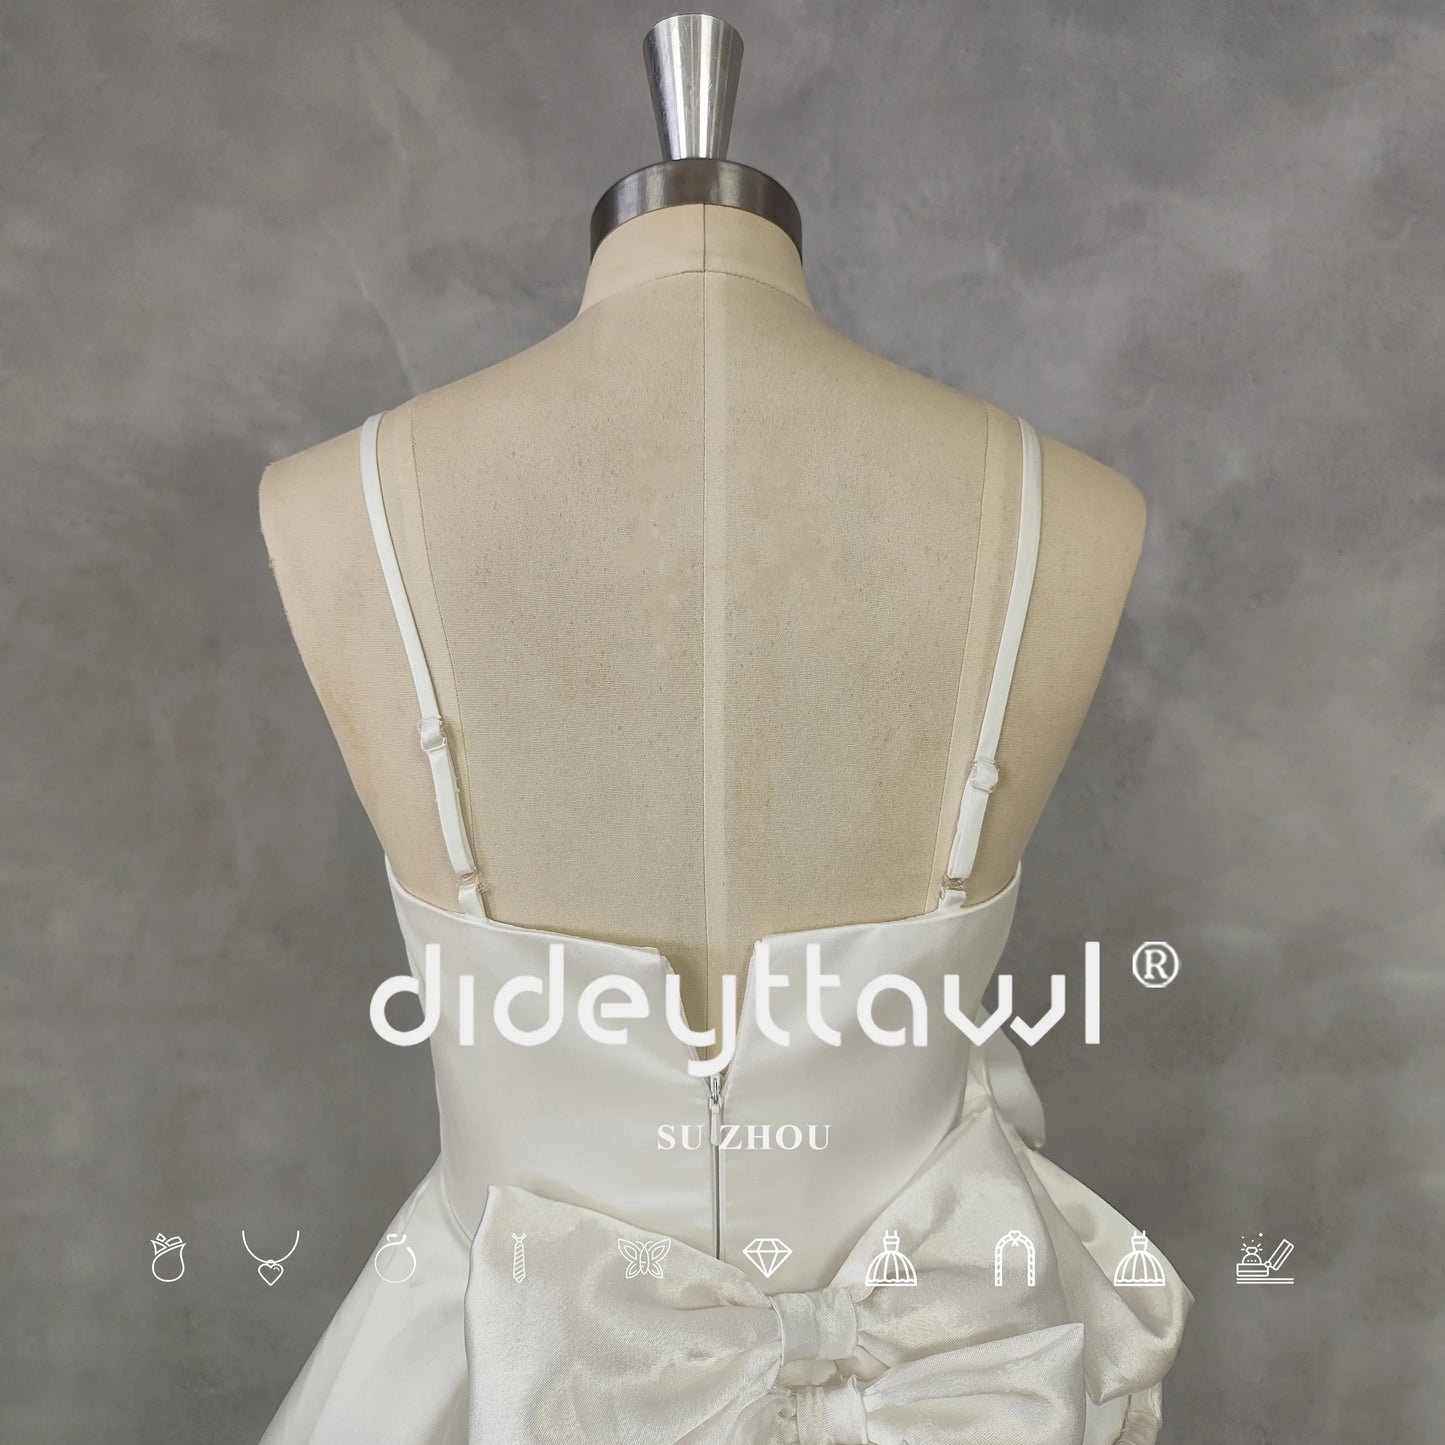 Disegno a collo quadrate Short Wedding Party Dress Bow A-Line Zipper Back Mini Lunghezza Abito da sposa su misura.